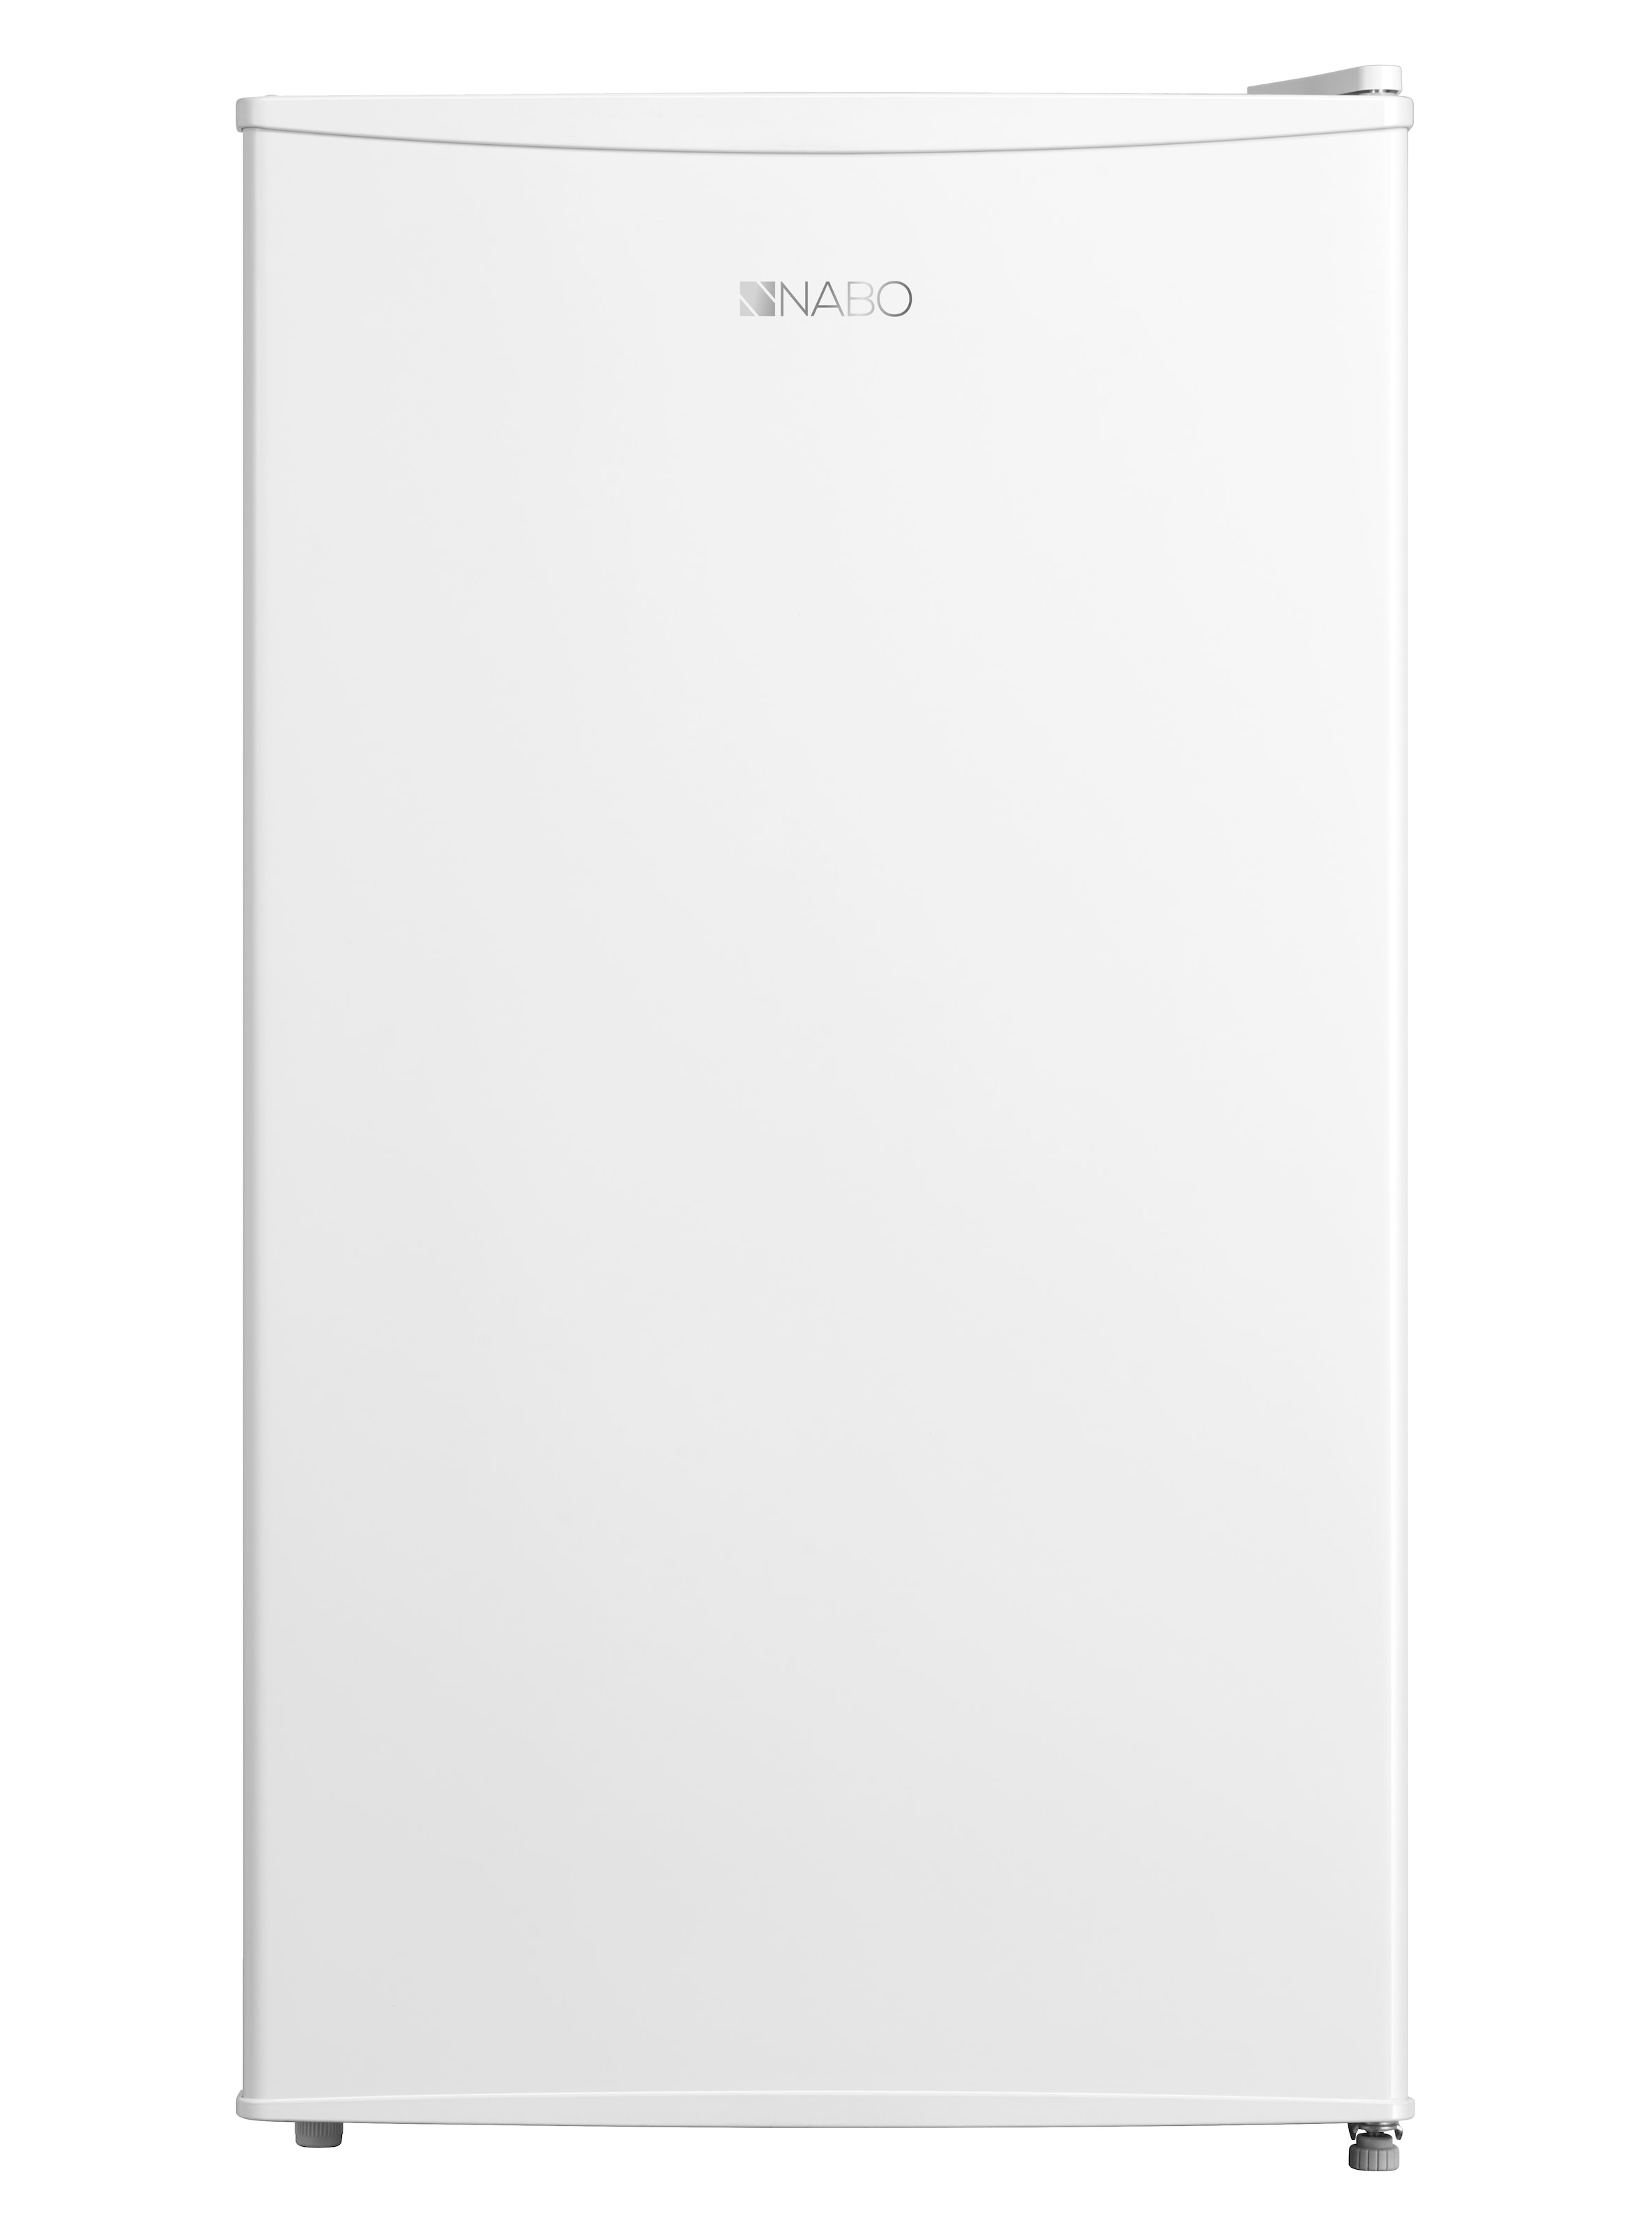 NABO Kühlschrank »KT 1100«, KT 1100, 86,4 cm hoch, 47,2 cm breit